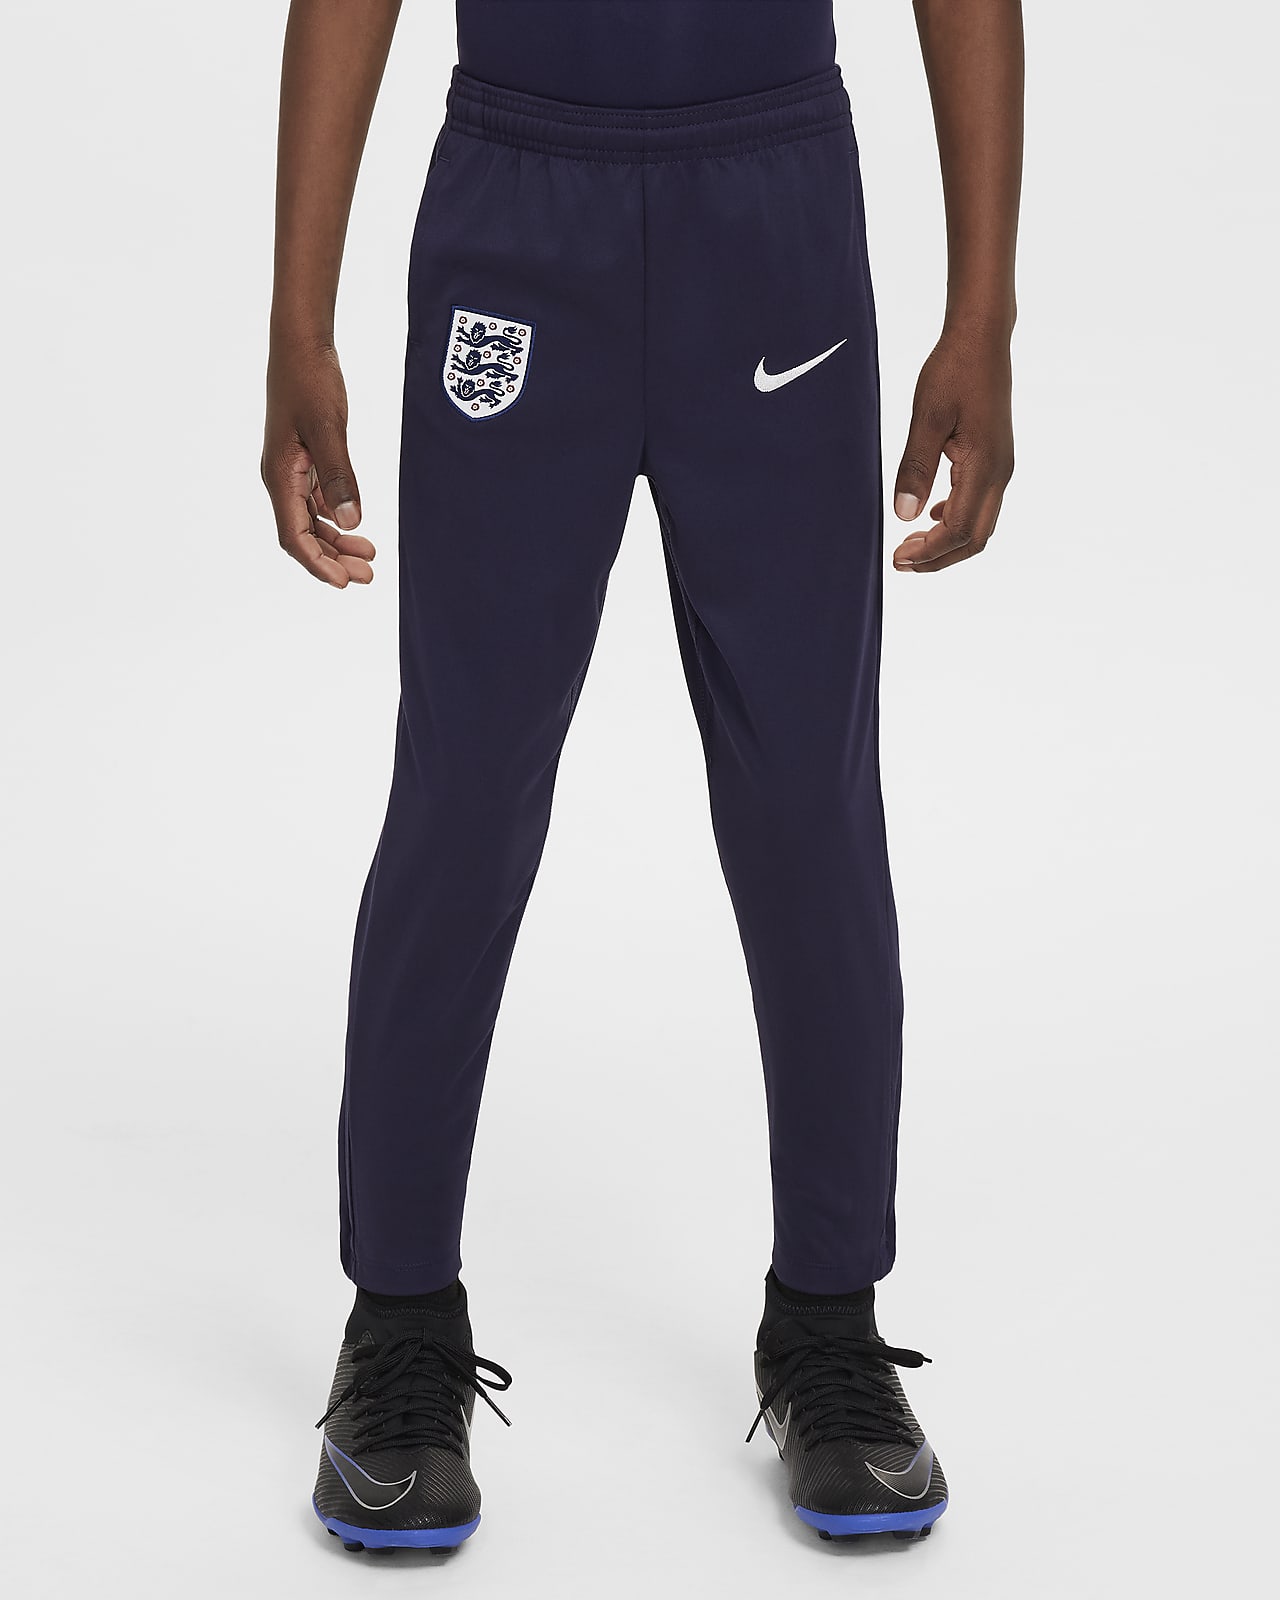 Pleteninové fotbalové kalhoty Nike Dri-FIT Anglie Academy Pro pro malé děti